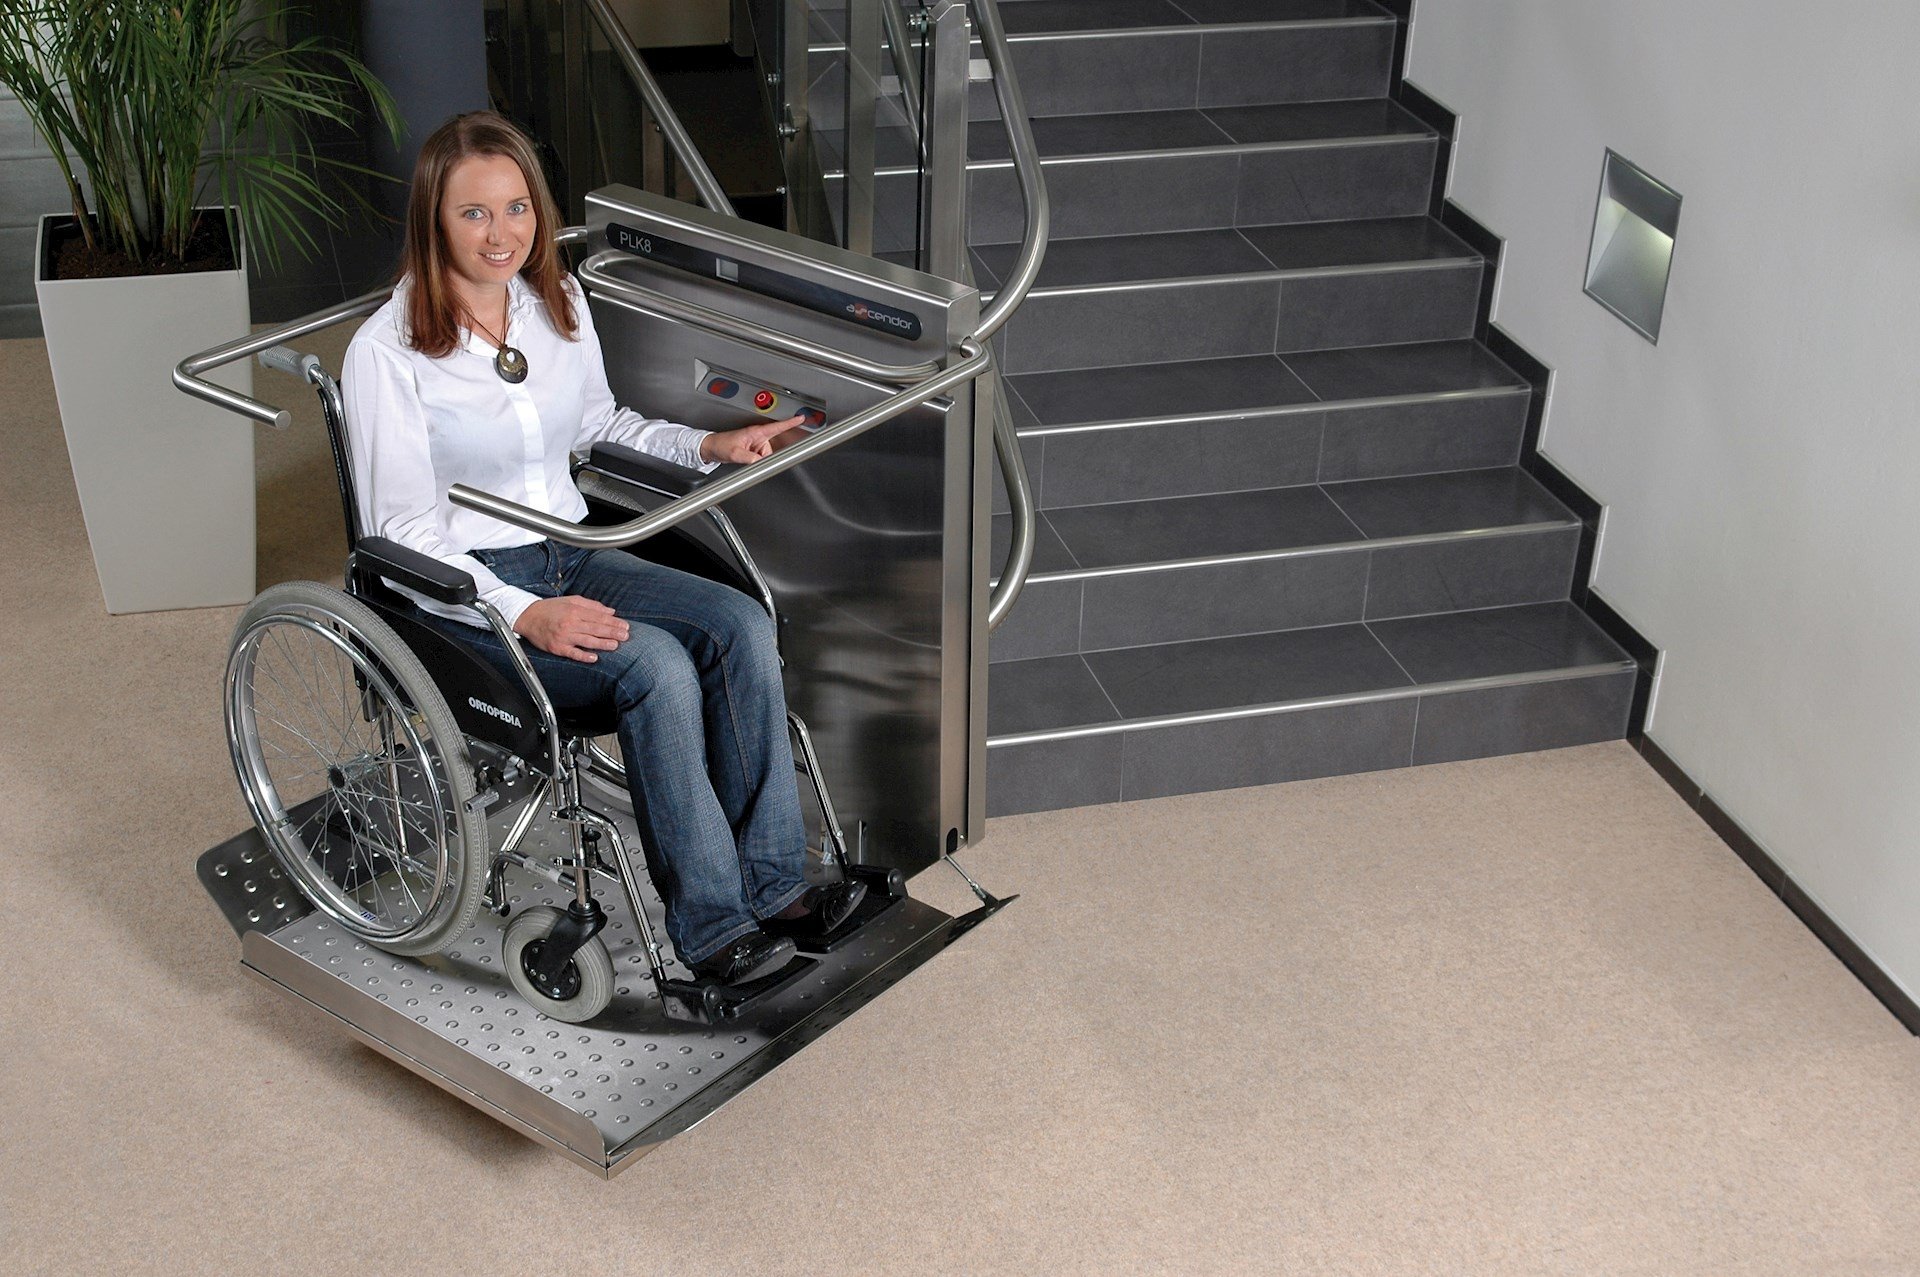 Заработок инвалид. ИНВАПРОМ а310 подъемник для инвалидов. БКА 110 подъемник для инвалидов. Наклонная платформа - подъемник для инвалидов НПУ-001. Веара подъёмники для инвалидов.